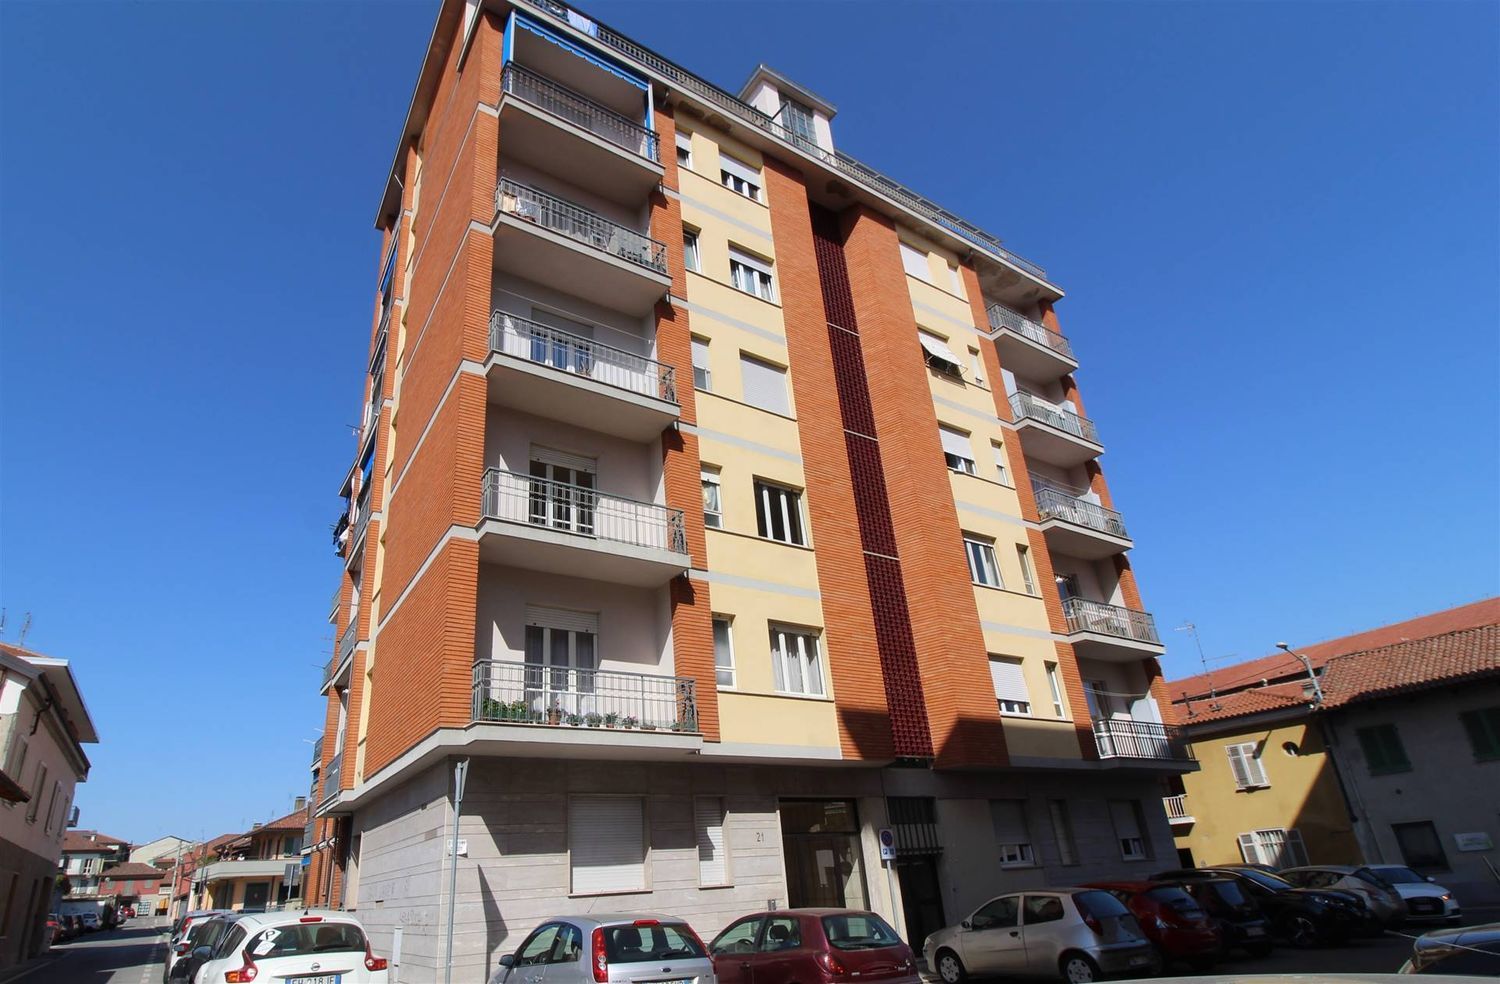 Appartamento in vendita a Chieri, 3 locali, prezzo € 85.000 | PortaleAgenzieImmobiliari.it